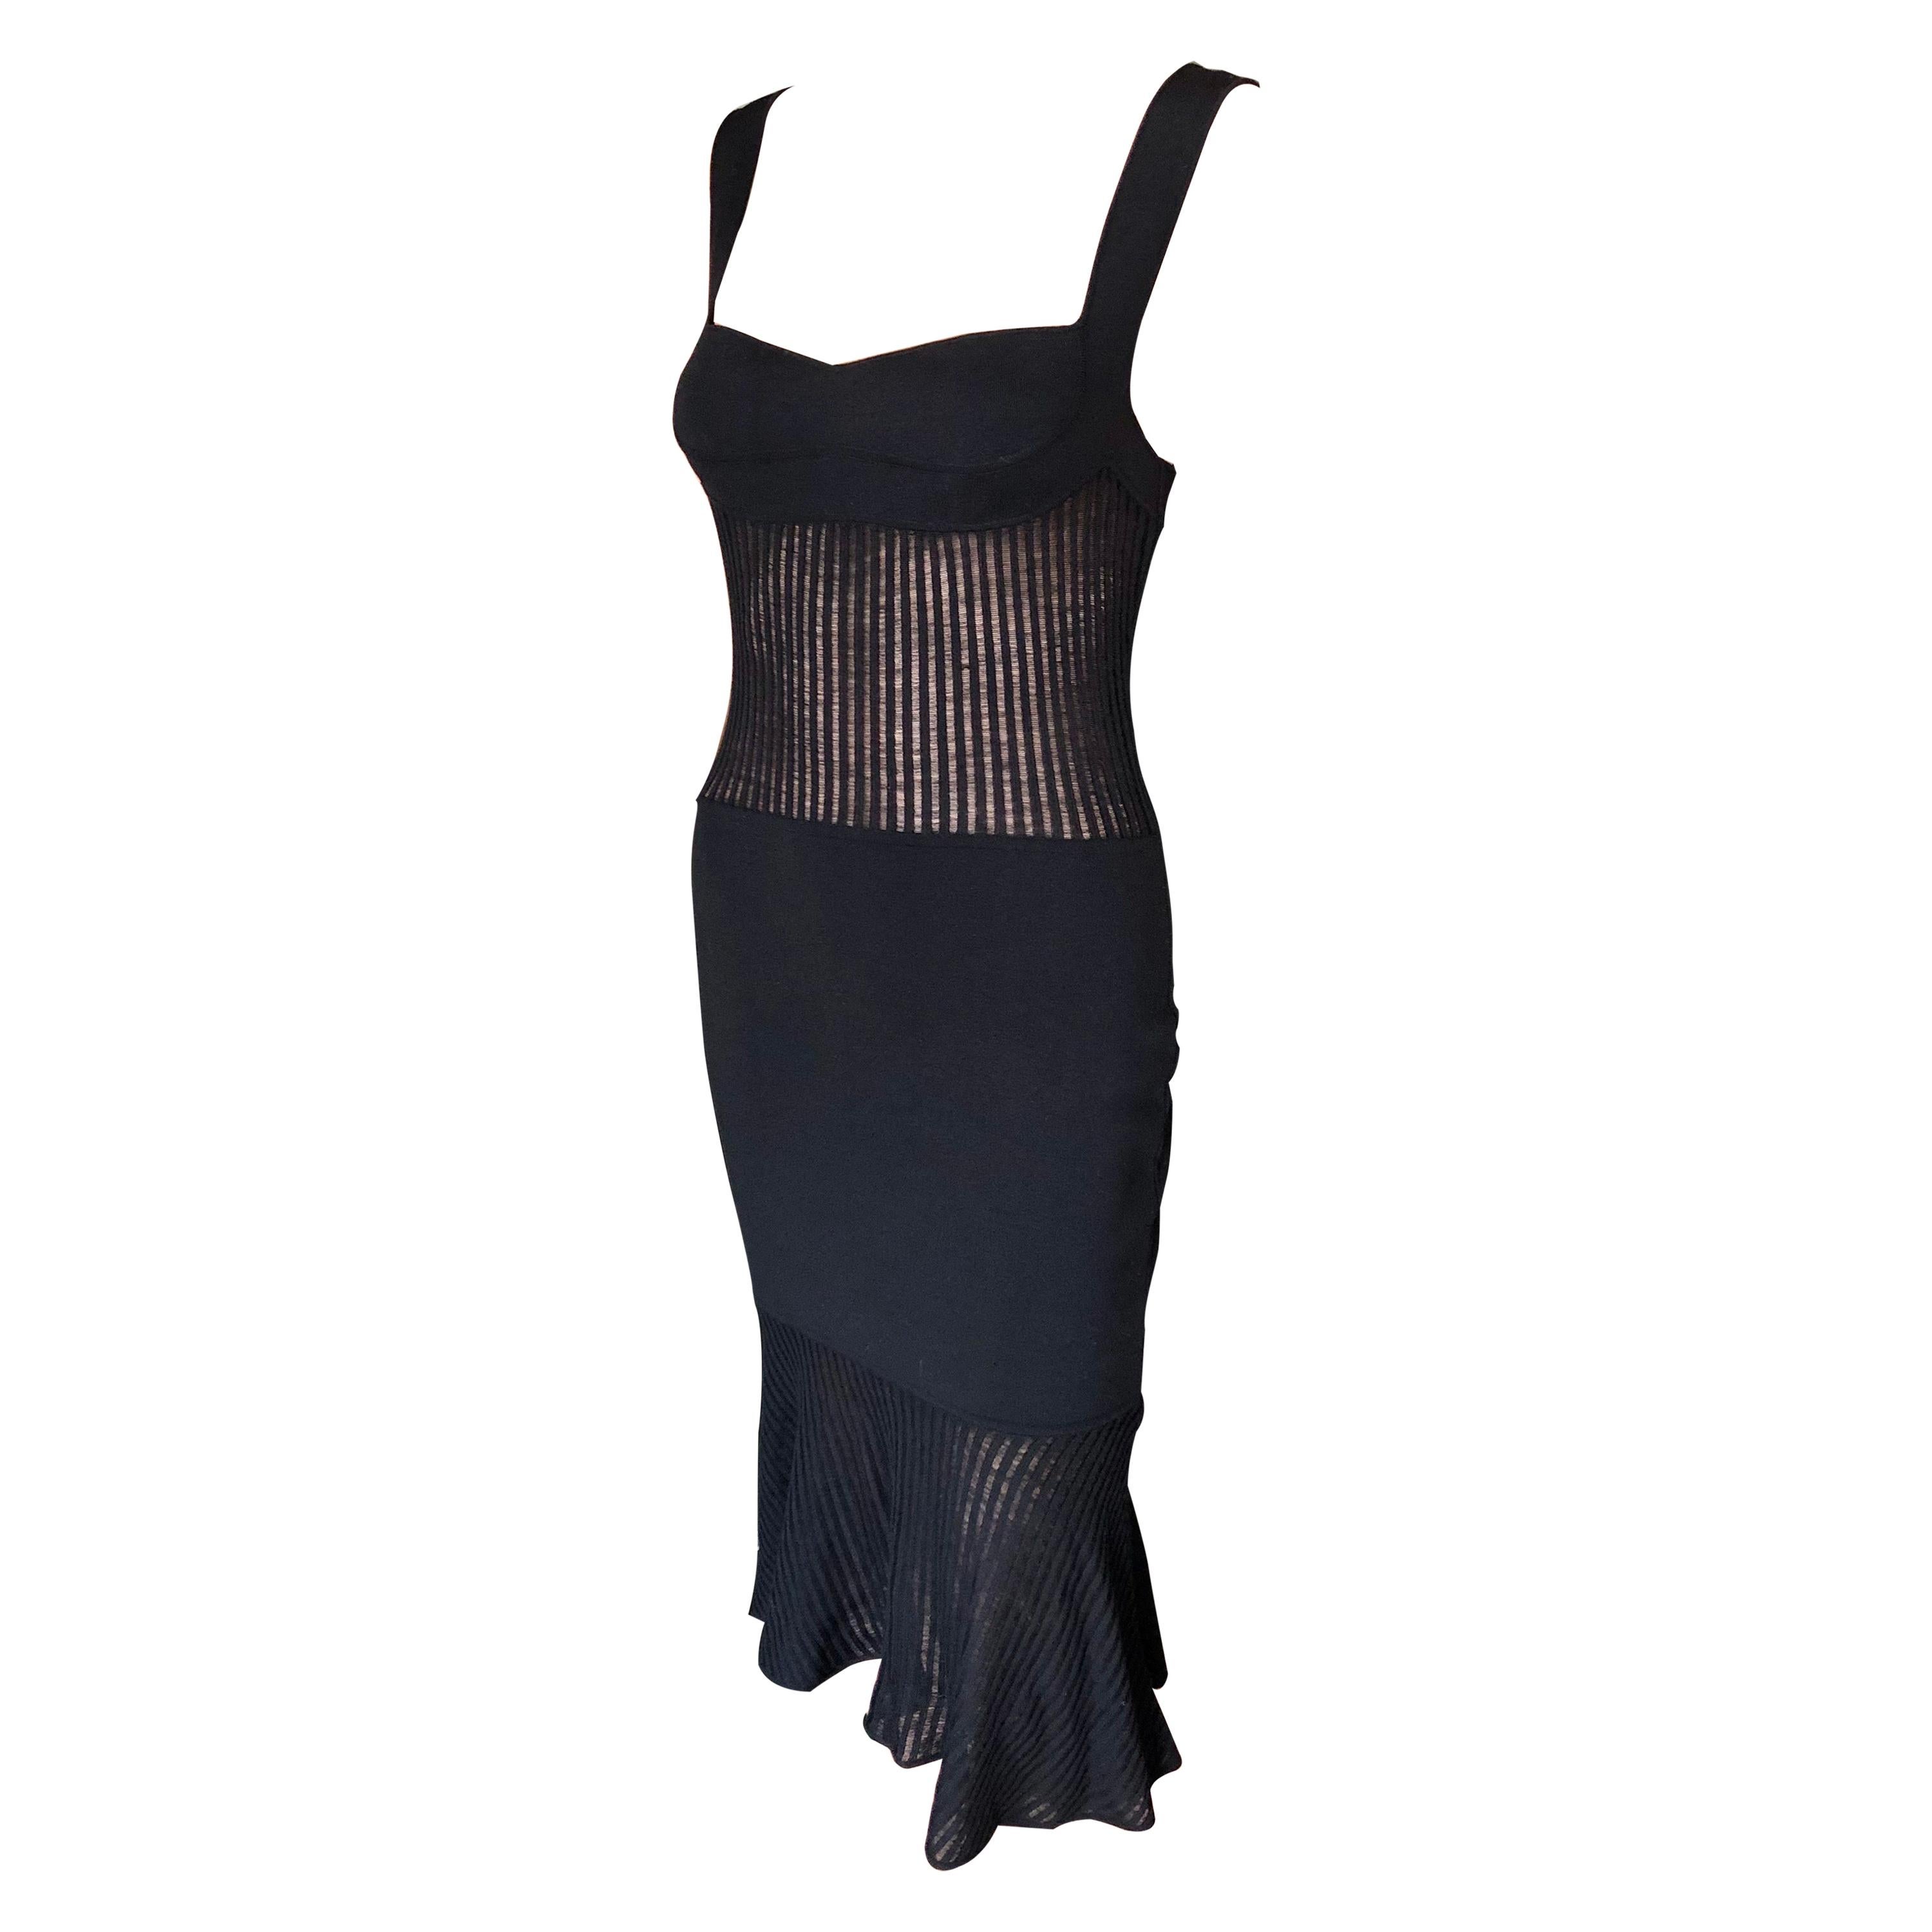 Gianni Versace 1990’s Vintage Sheer Knit Black Dress For Sale